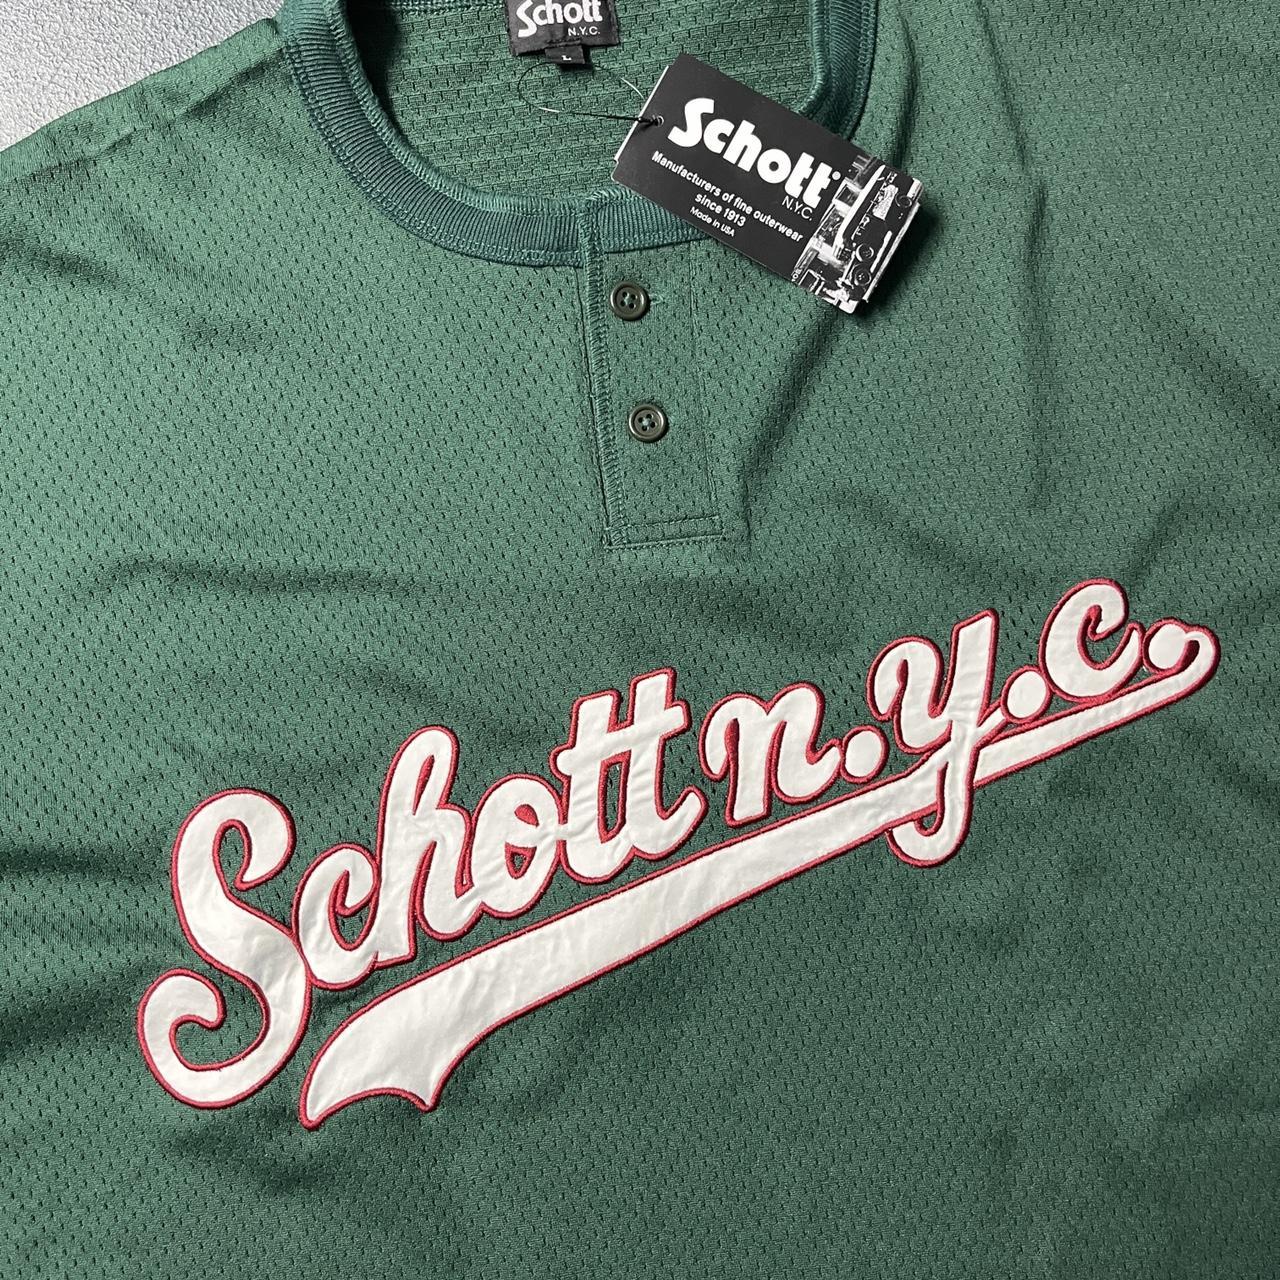 Schott Men's Green Shirt (4)